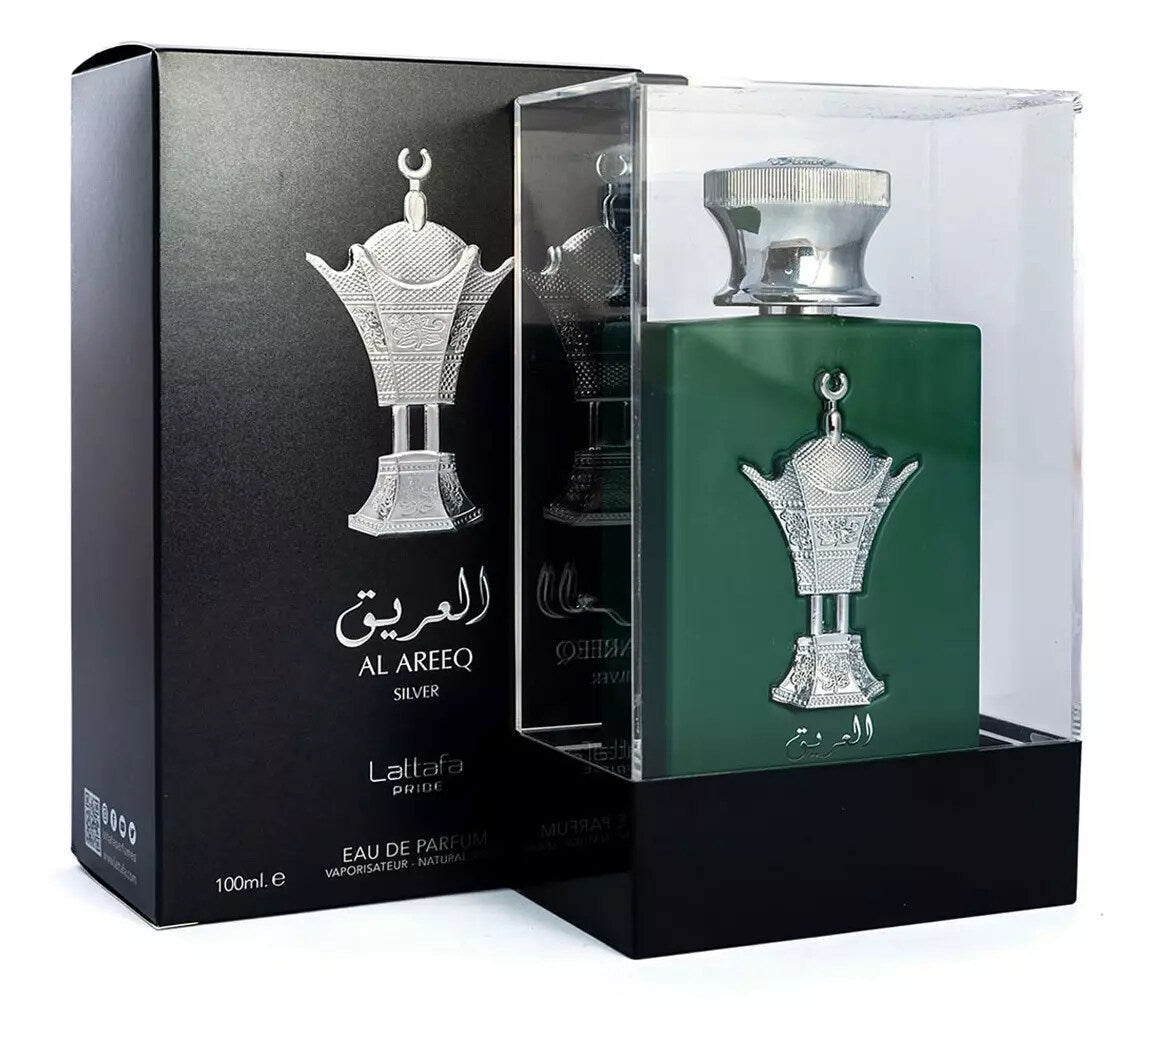 Al Areeq Silver EDP (100ml) spray perfume by Lattafa | Khan El Khalili